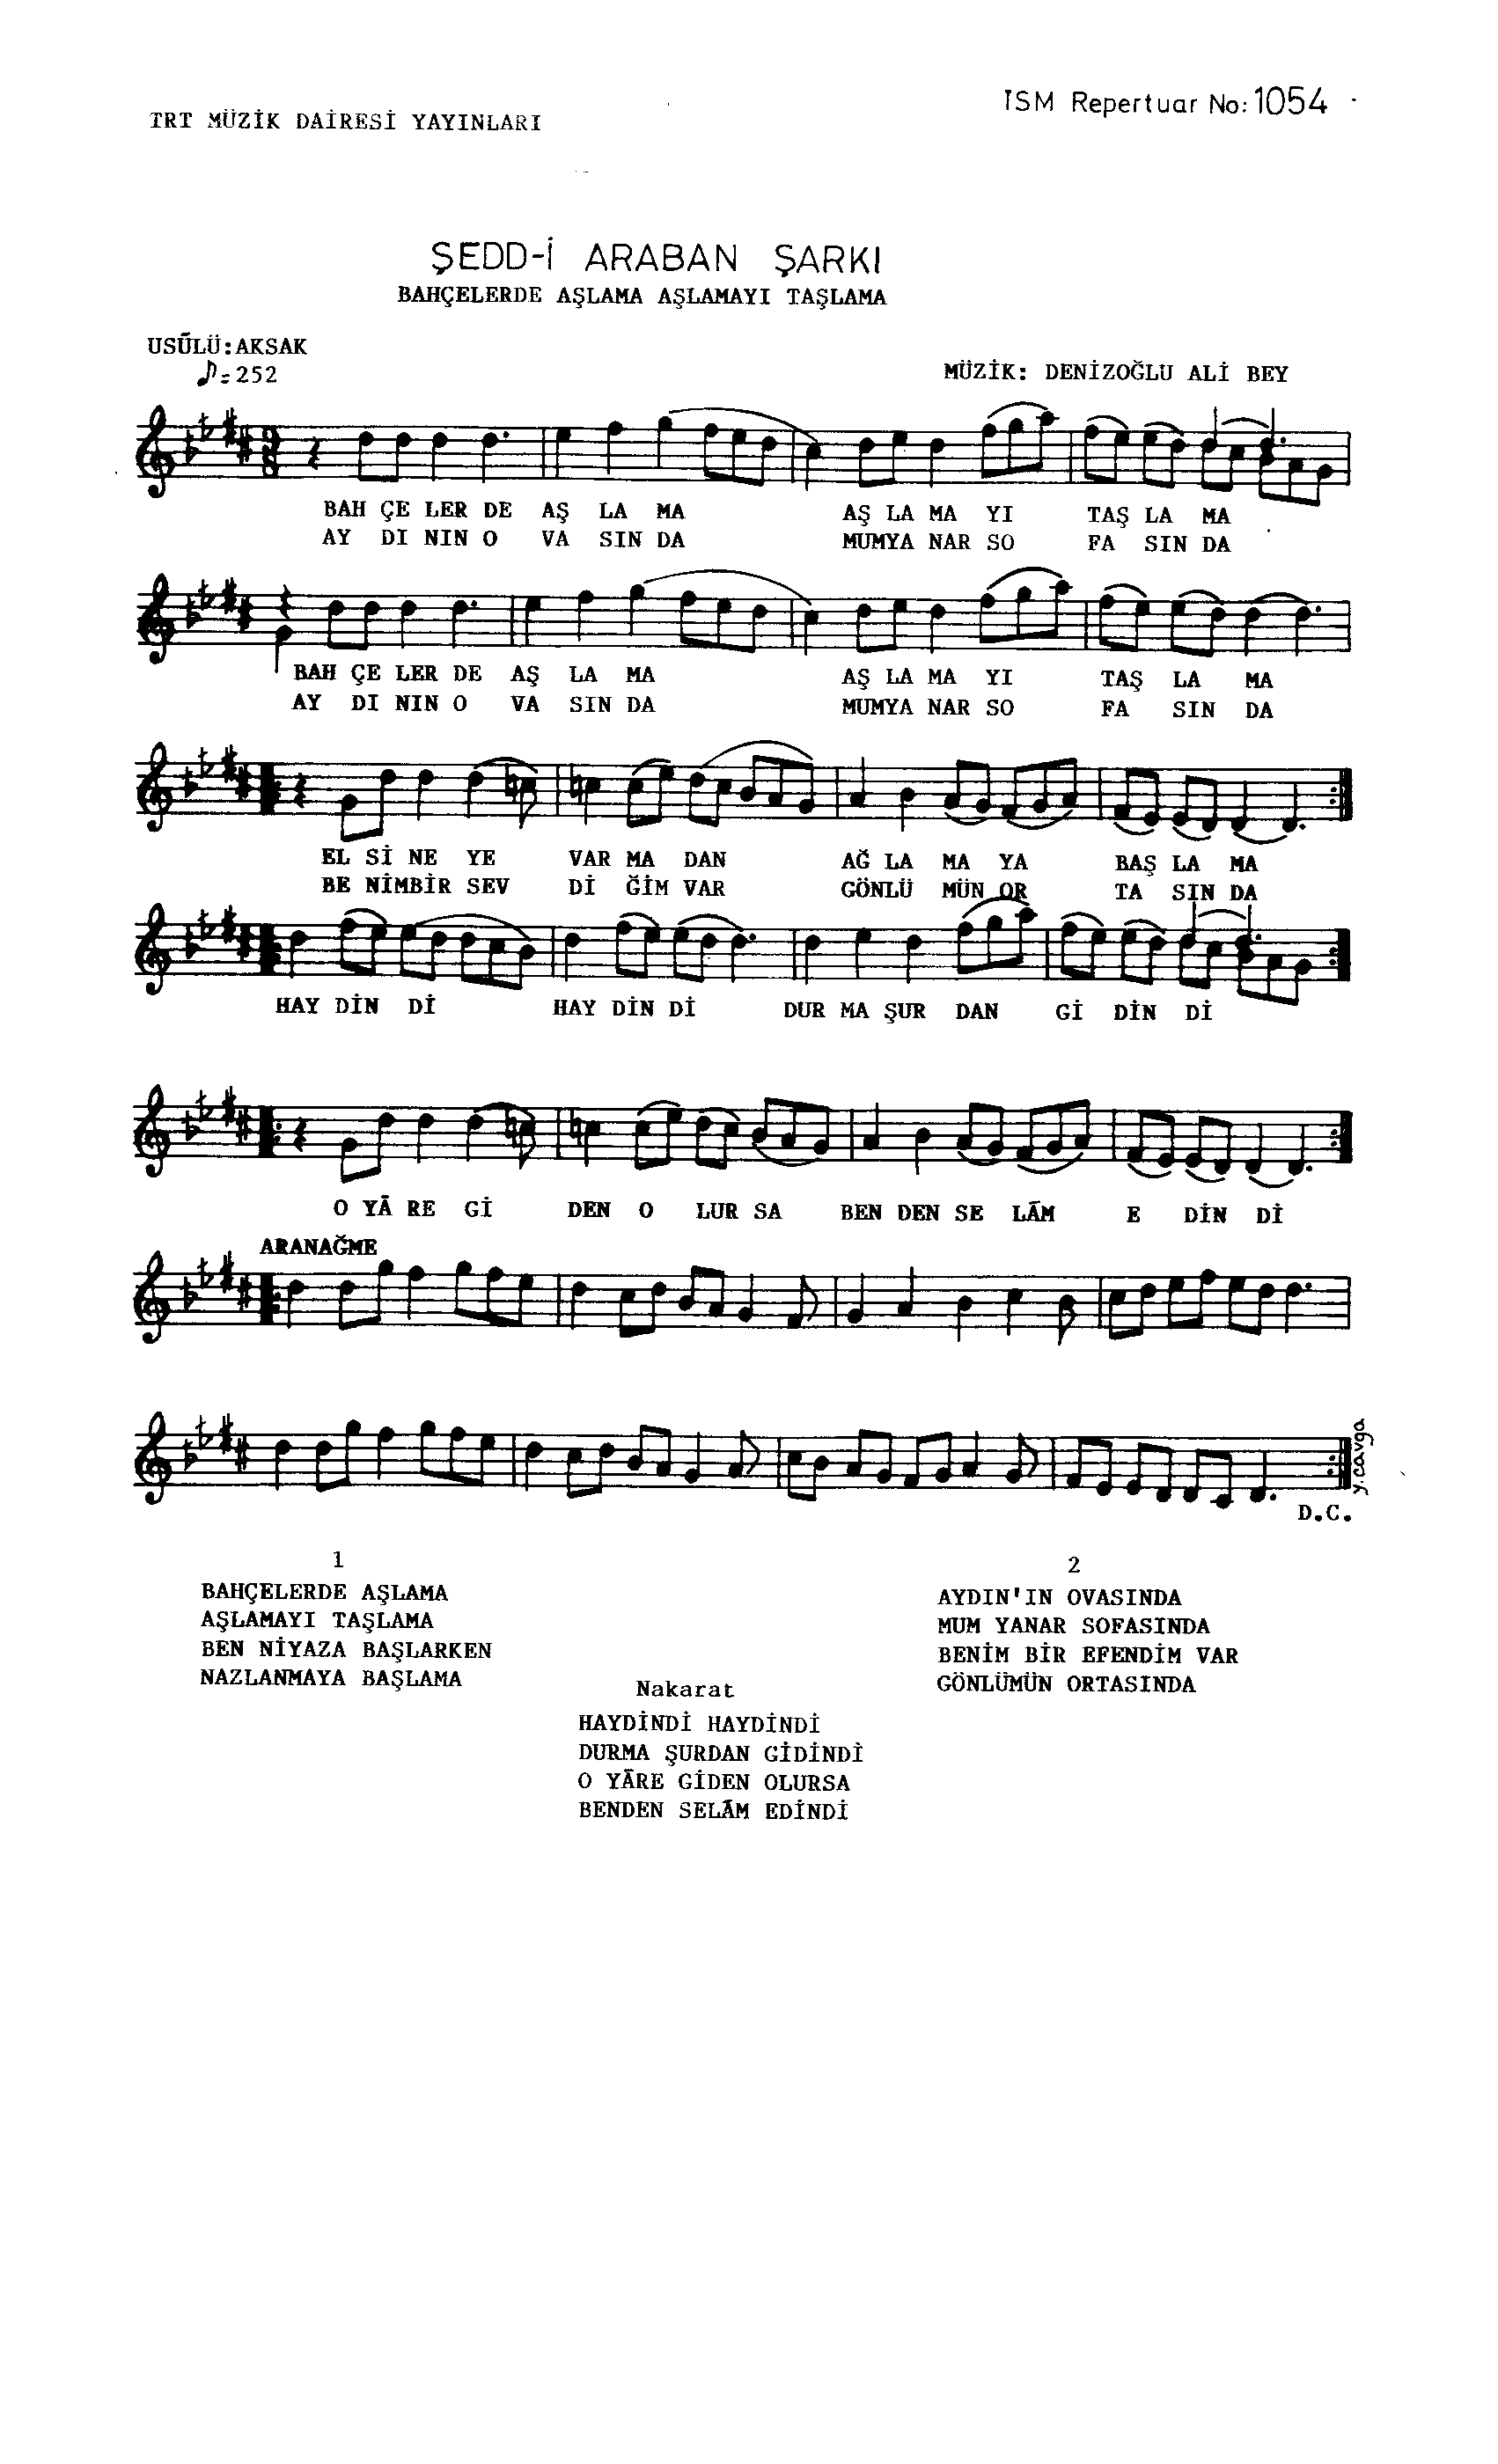 Şedd-i Arabân - Şarkı - Denizoğlu Ali Bey - Sayfa 1